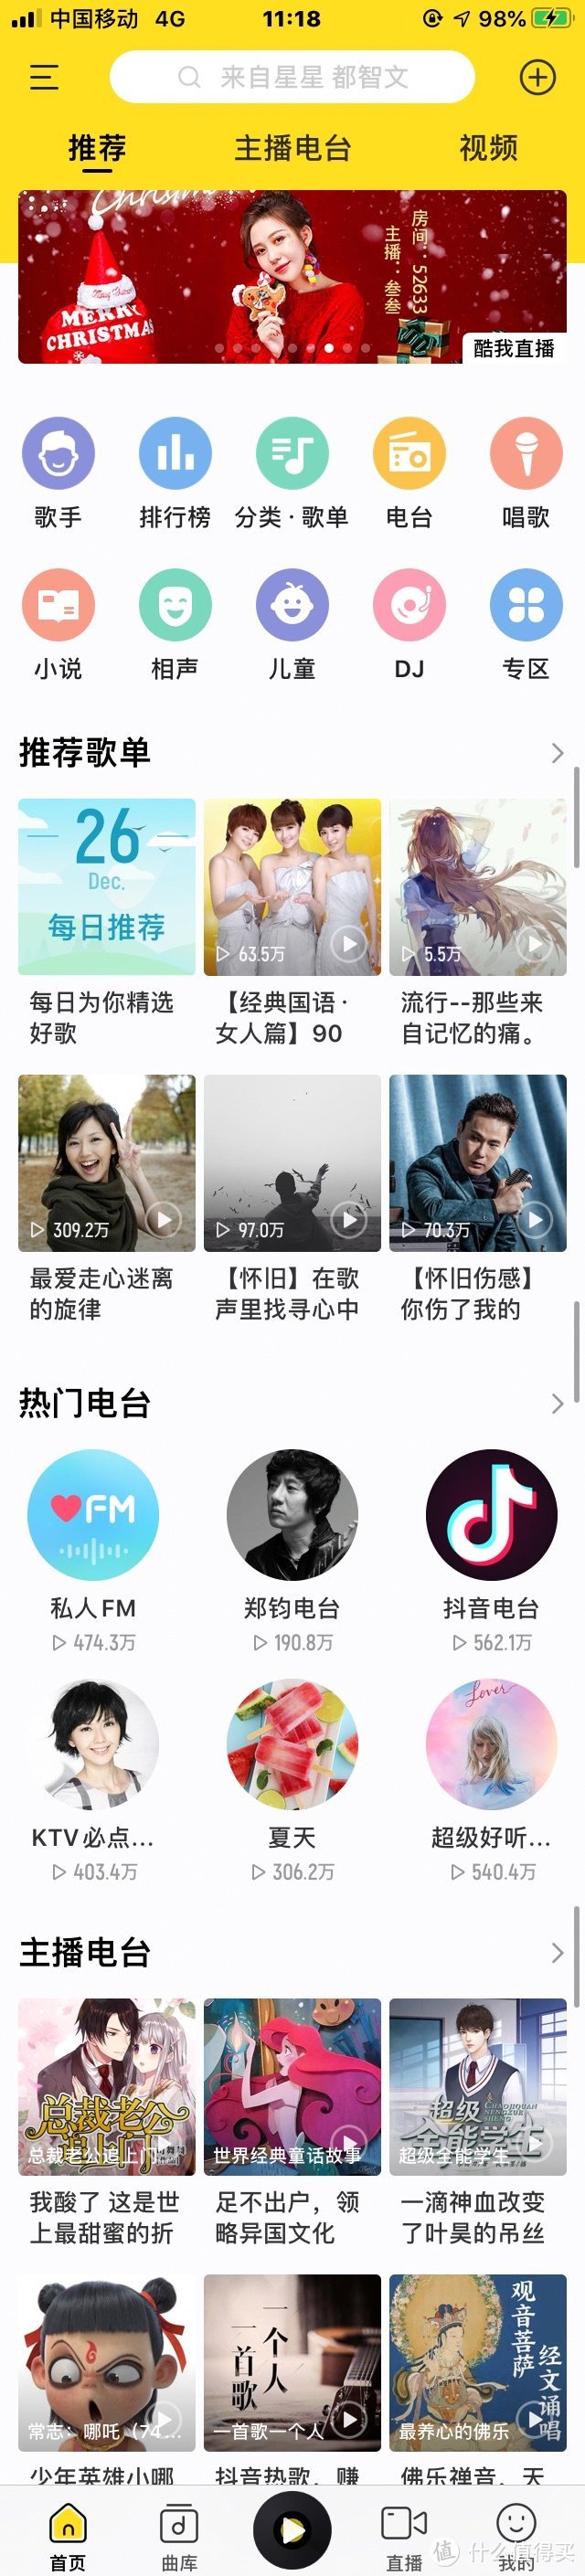 最好用的音乐app竟然是它——国内 7 大主流音乐流媒体会员服务横评